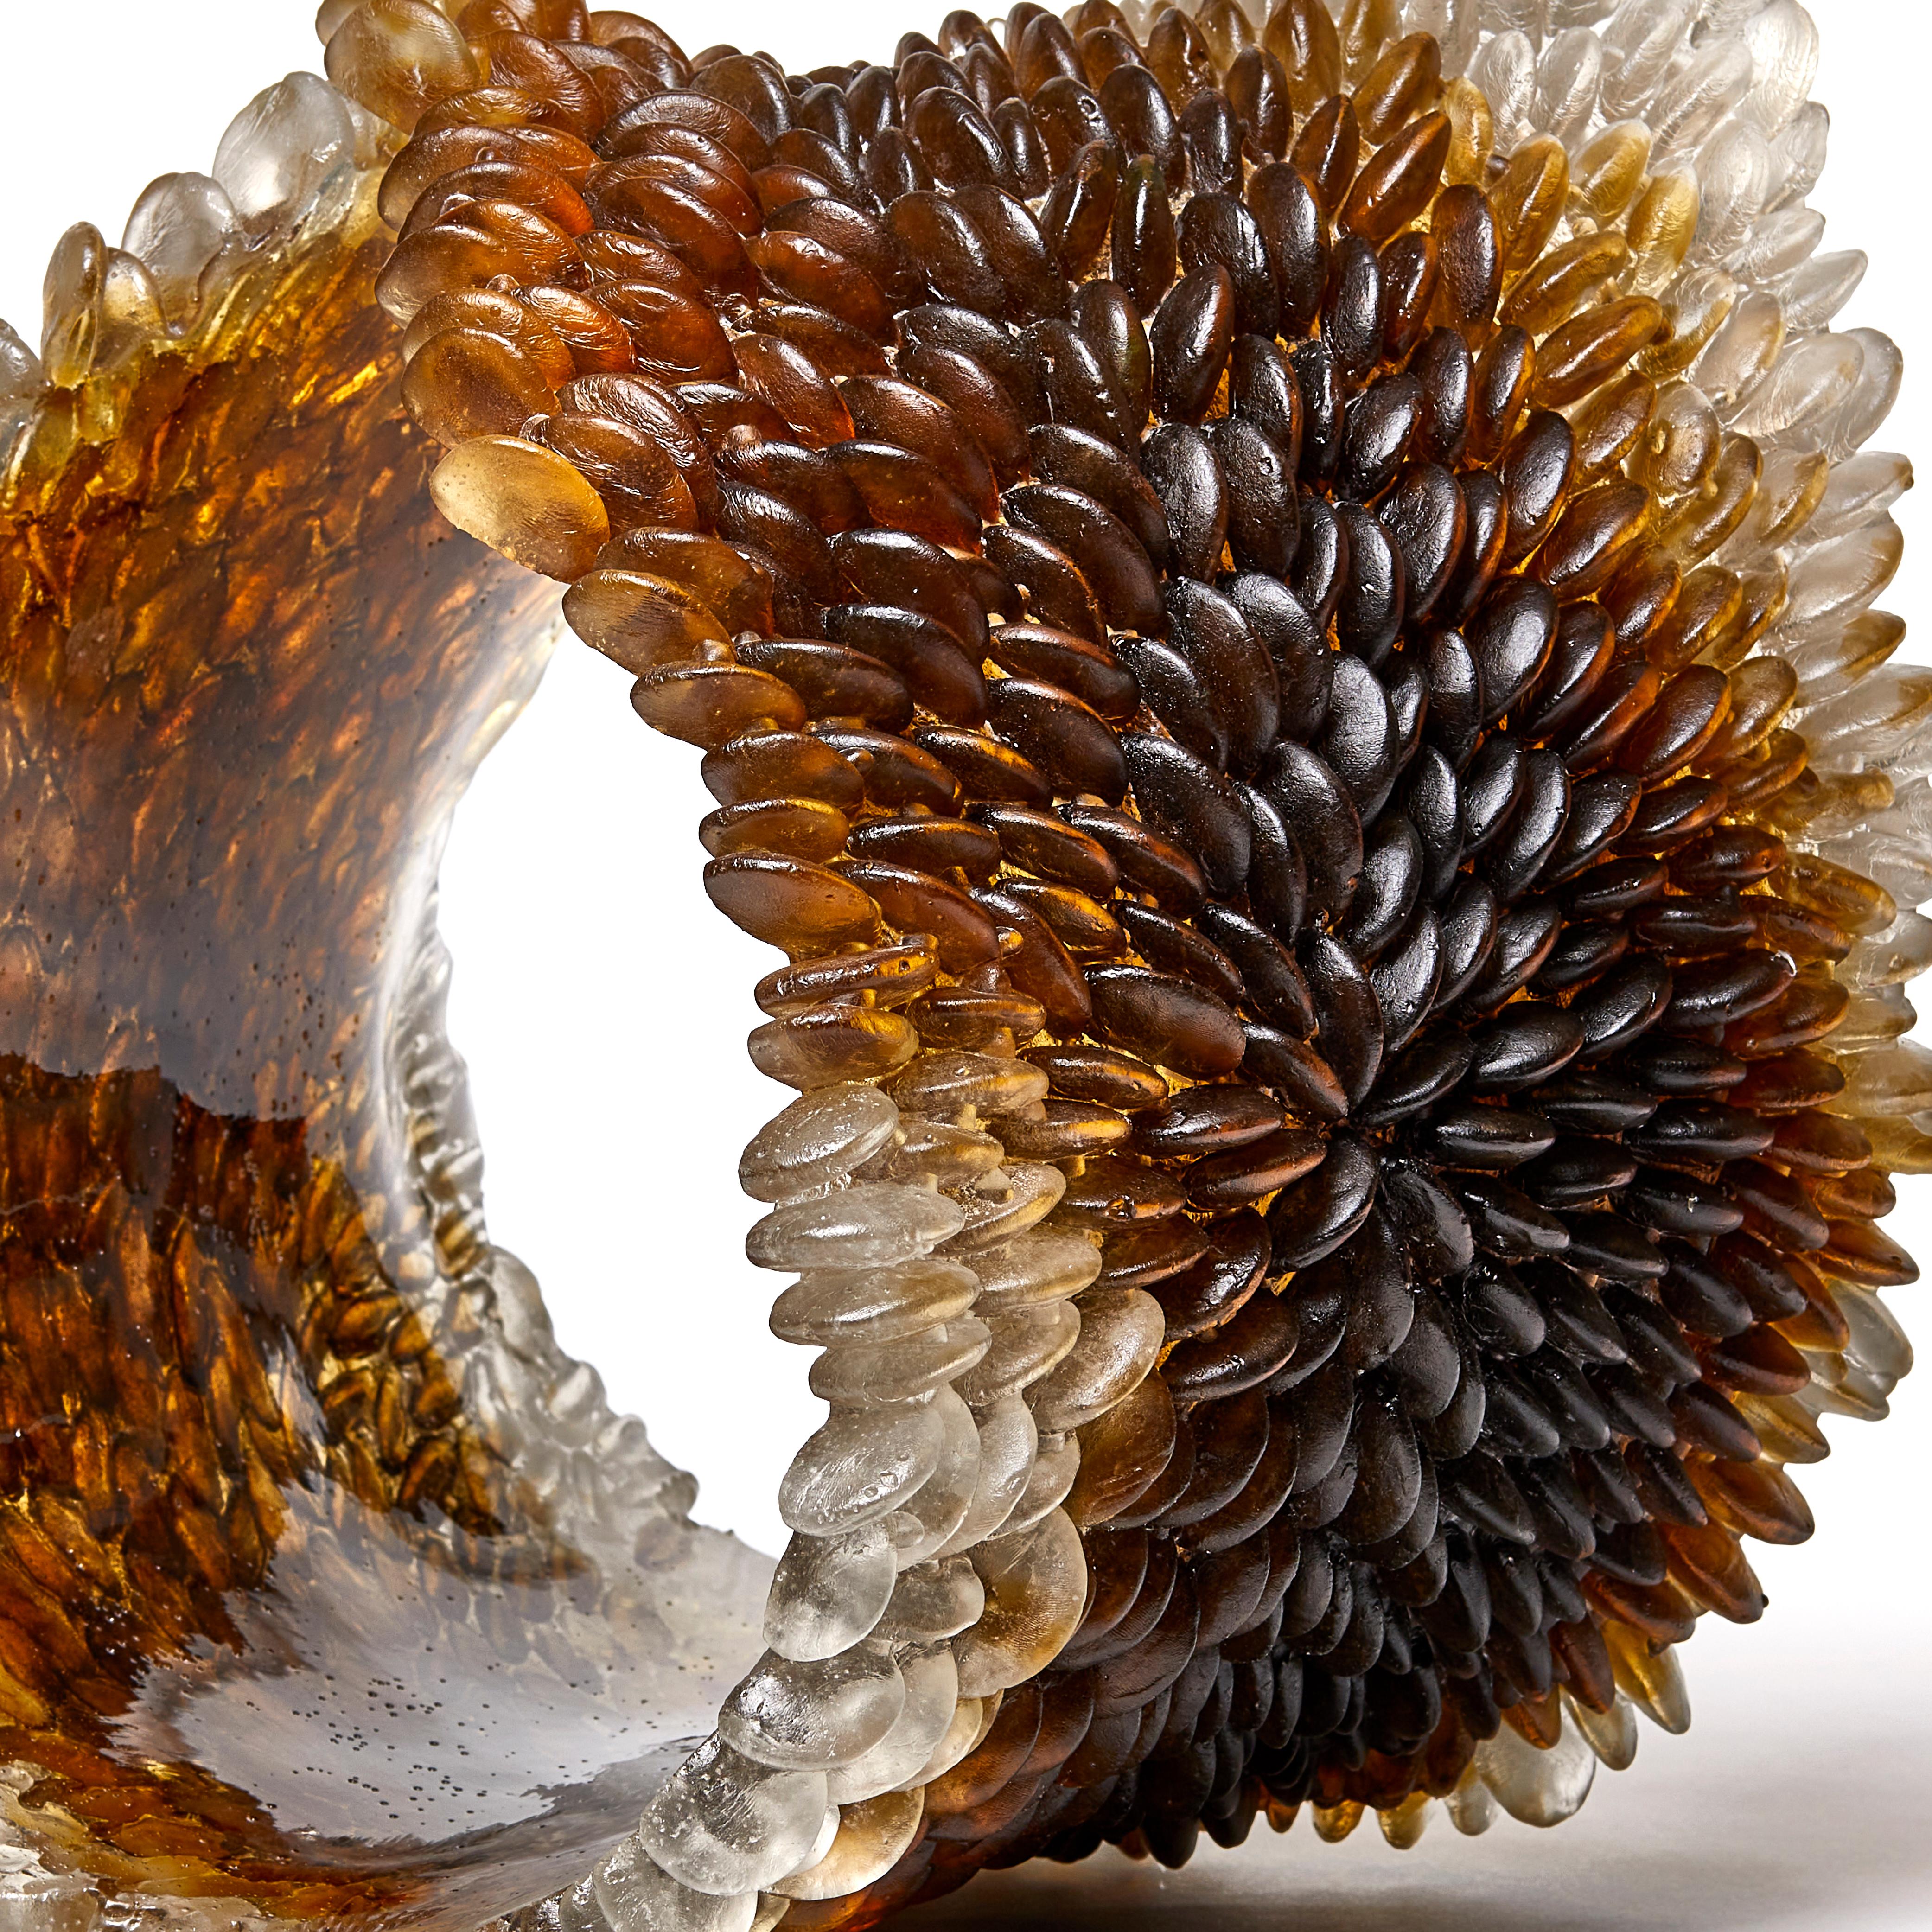 Winter Leaf I ist eine einzigartige strukturierte Glasskulptur in sattem Braun und Bernstein der britischen Künstlerin Nina Casson McGarva. 

Casson McGarva gießt ihr Glas zunächst in eine flache Form, in die sie die wunderschön detaillierte,